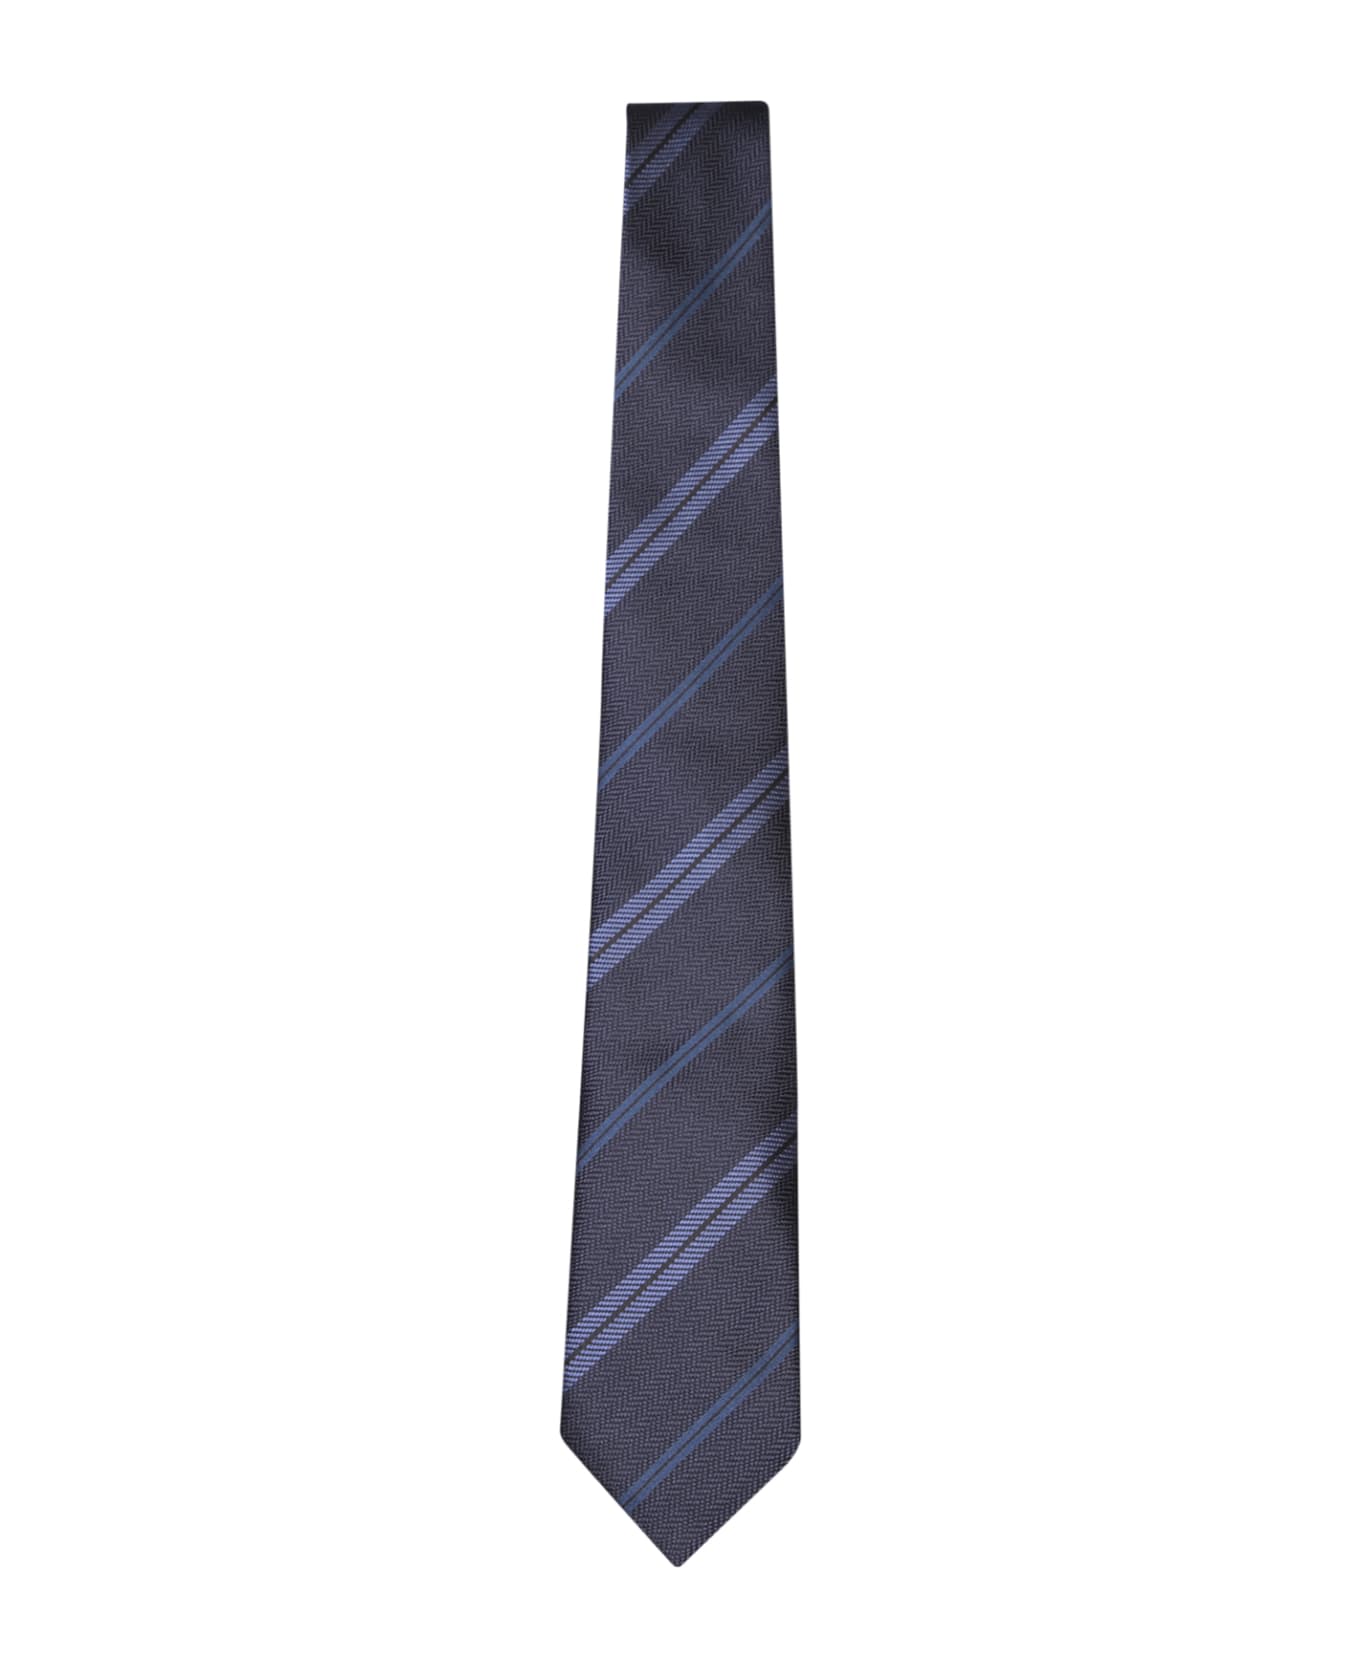 Tom Ford Regimental Patterned Blue Tie - Blue ネクタイ